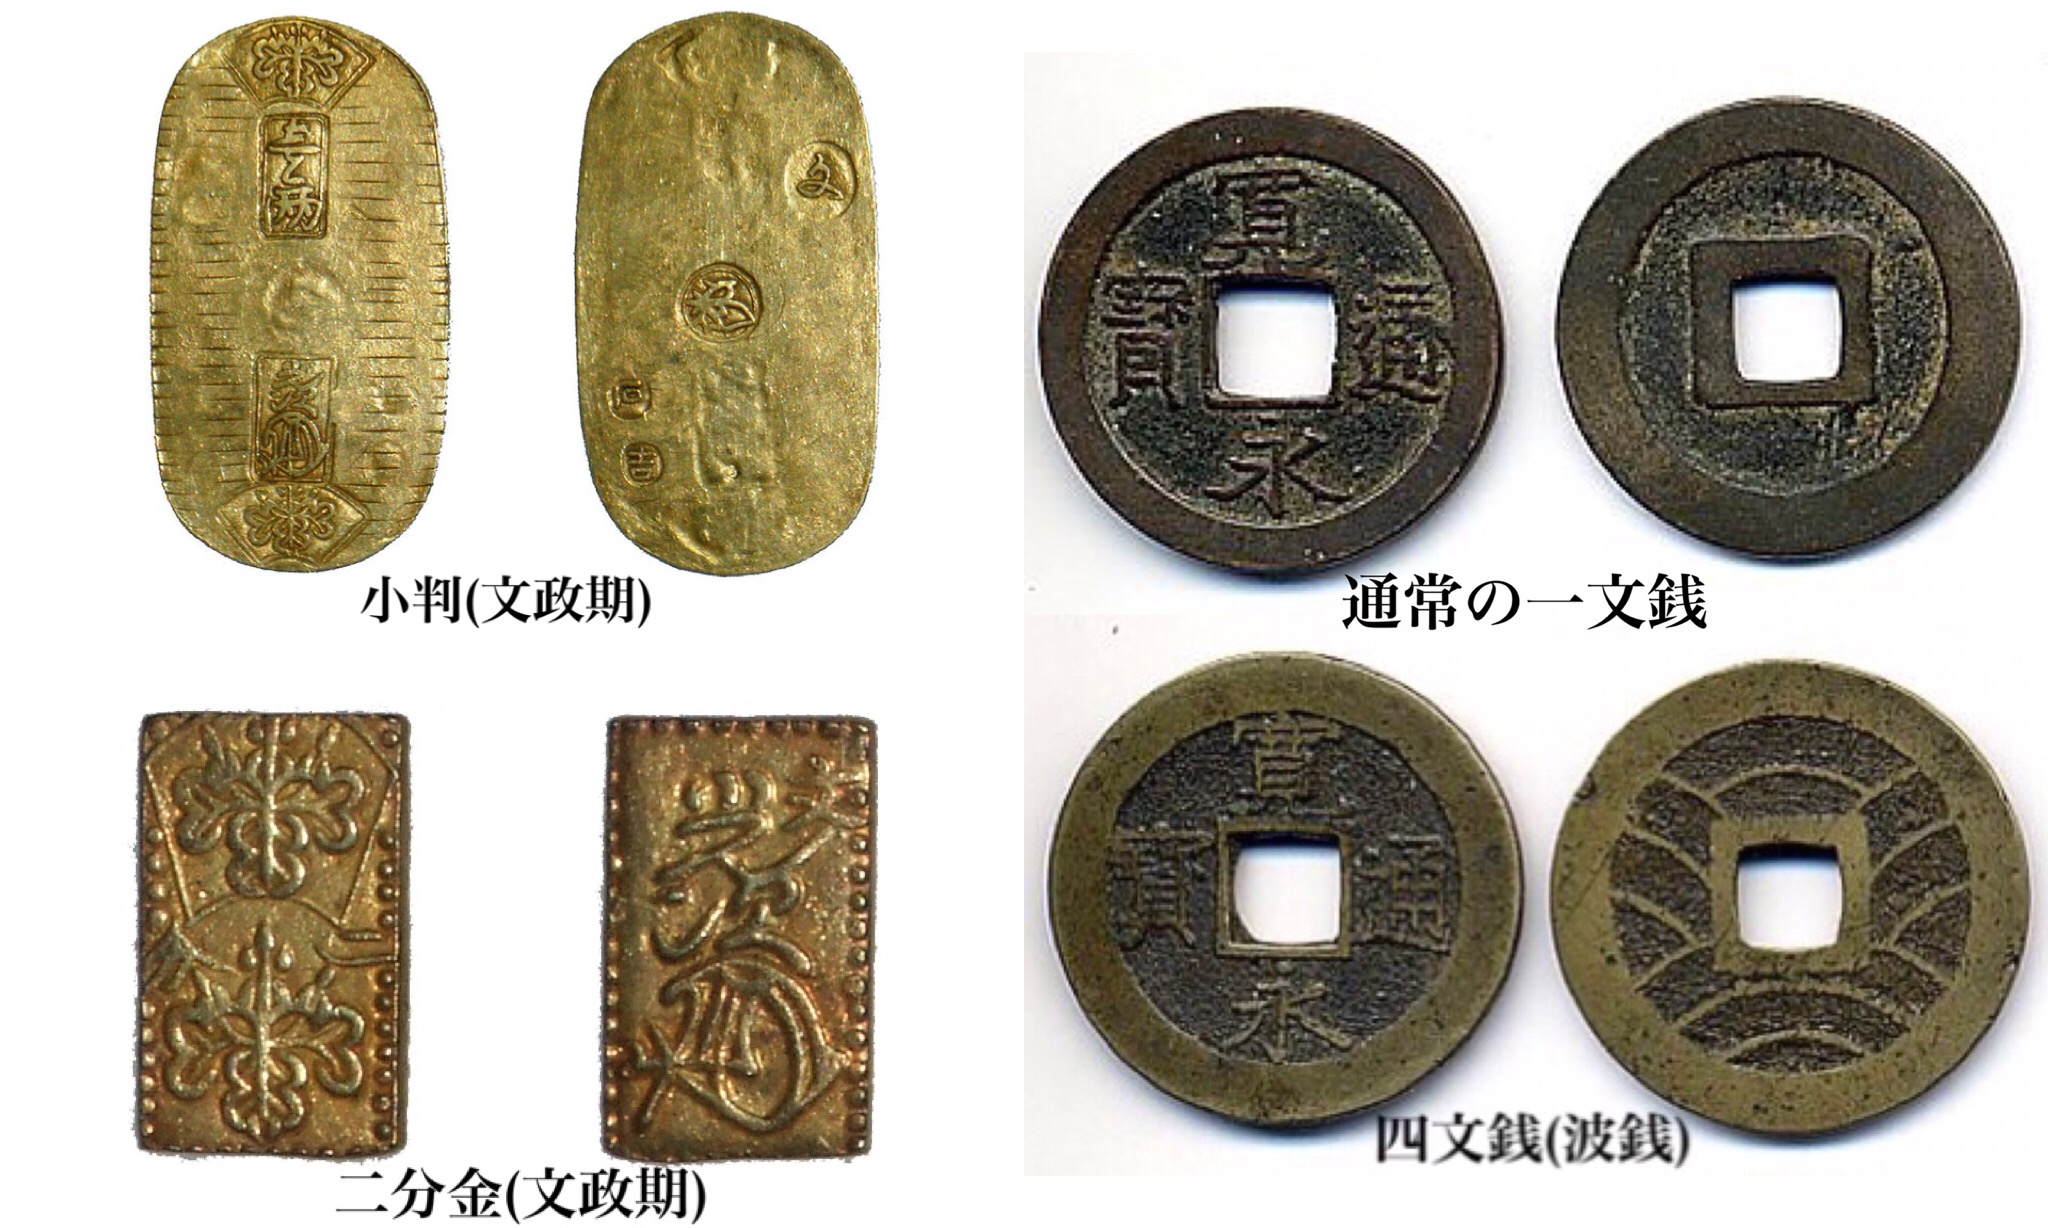 江戸時代の貨幣の種類と庶民の銭暮らし。庶民はめったに小判を使わ 